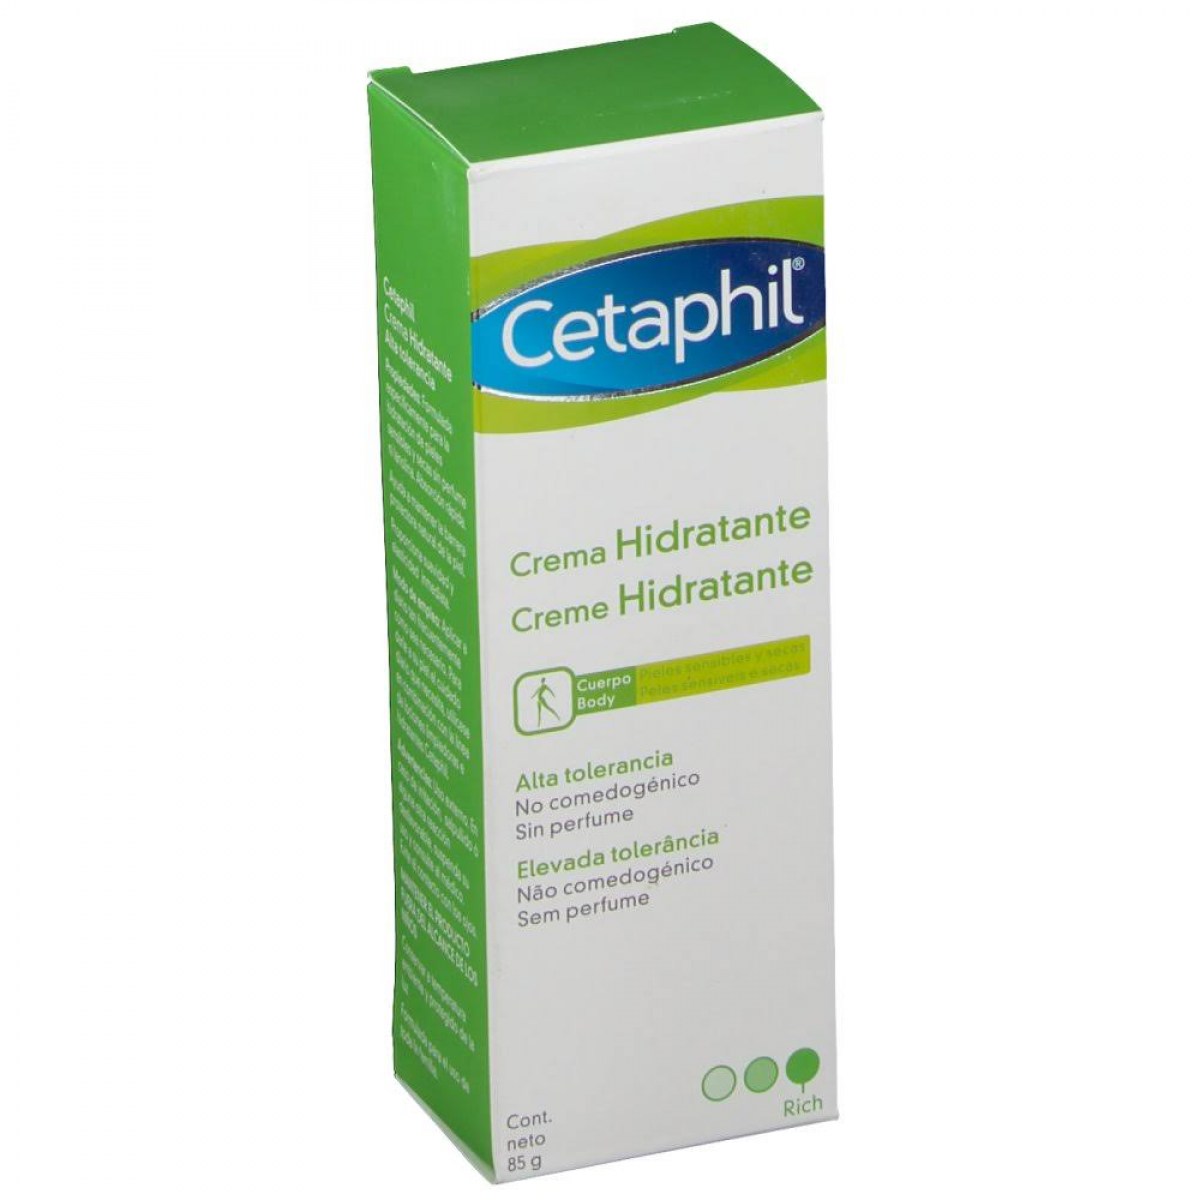 cetaphil crema hidratante 85 g